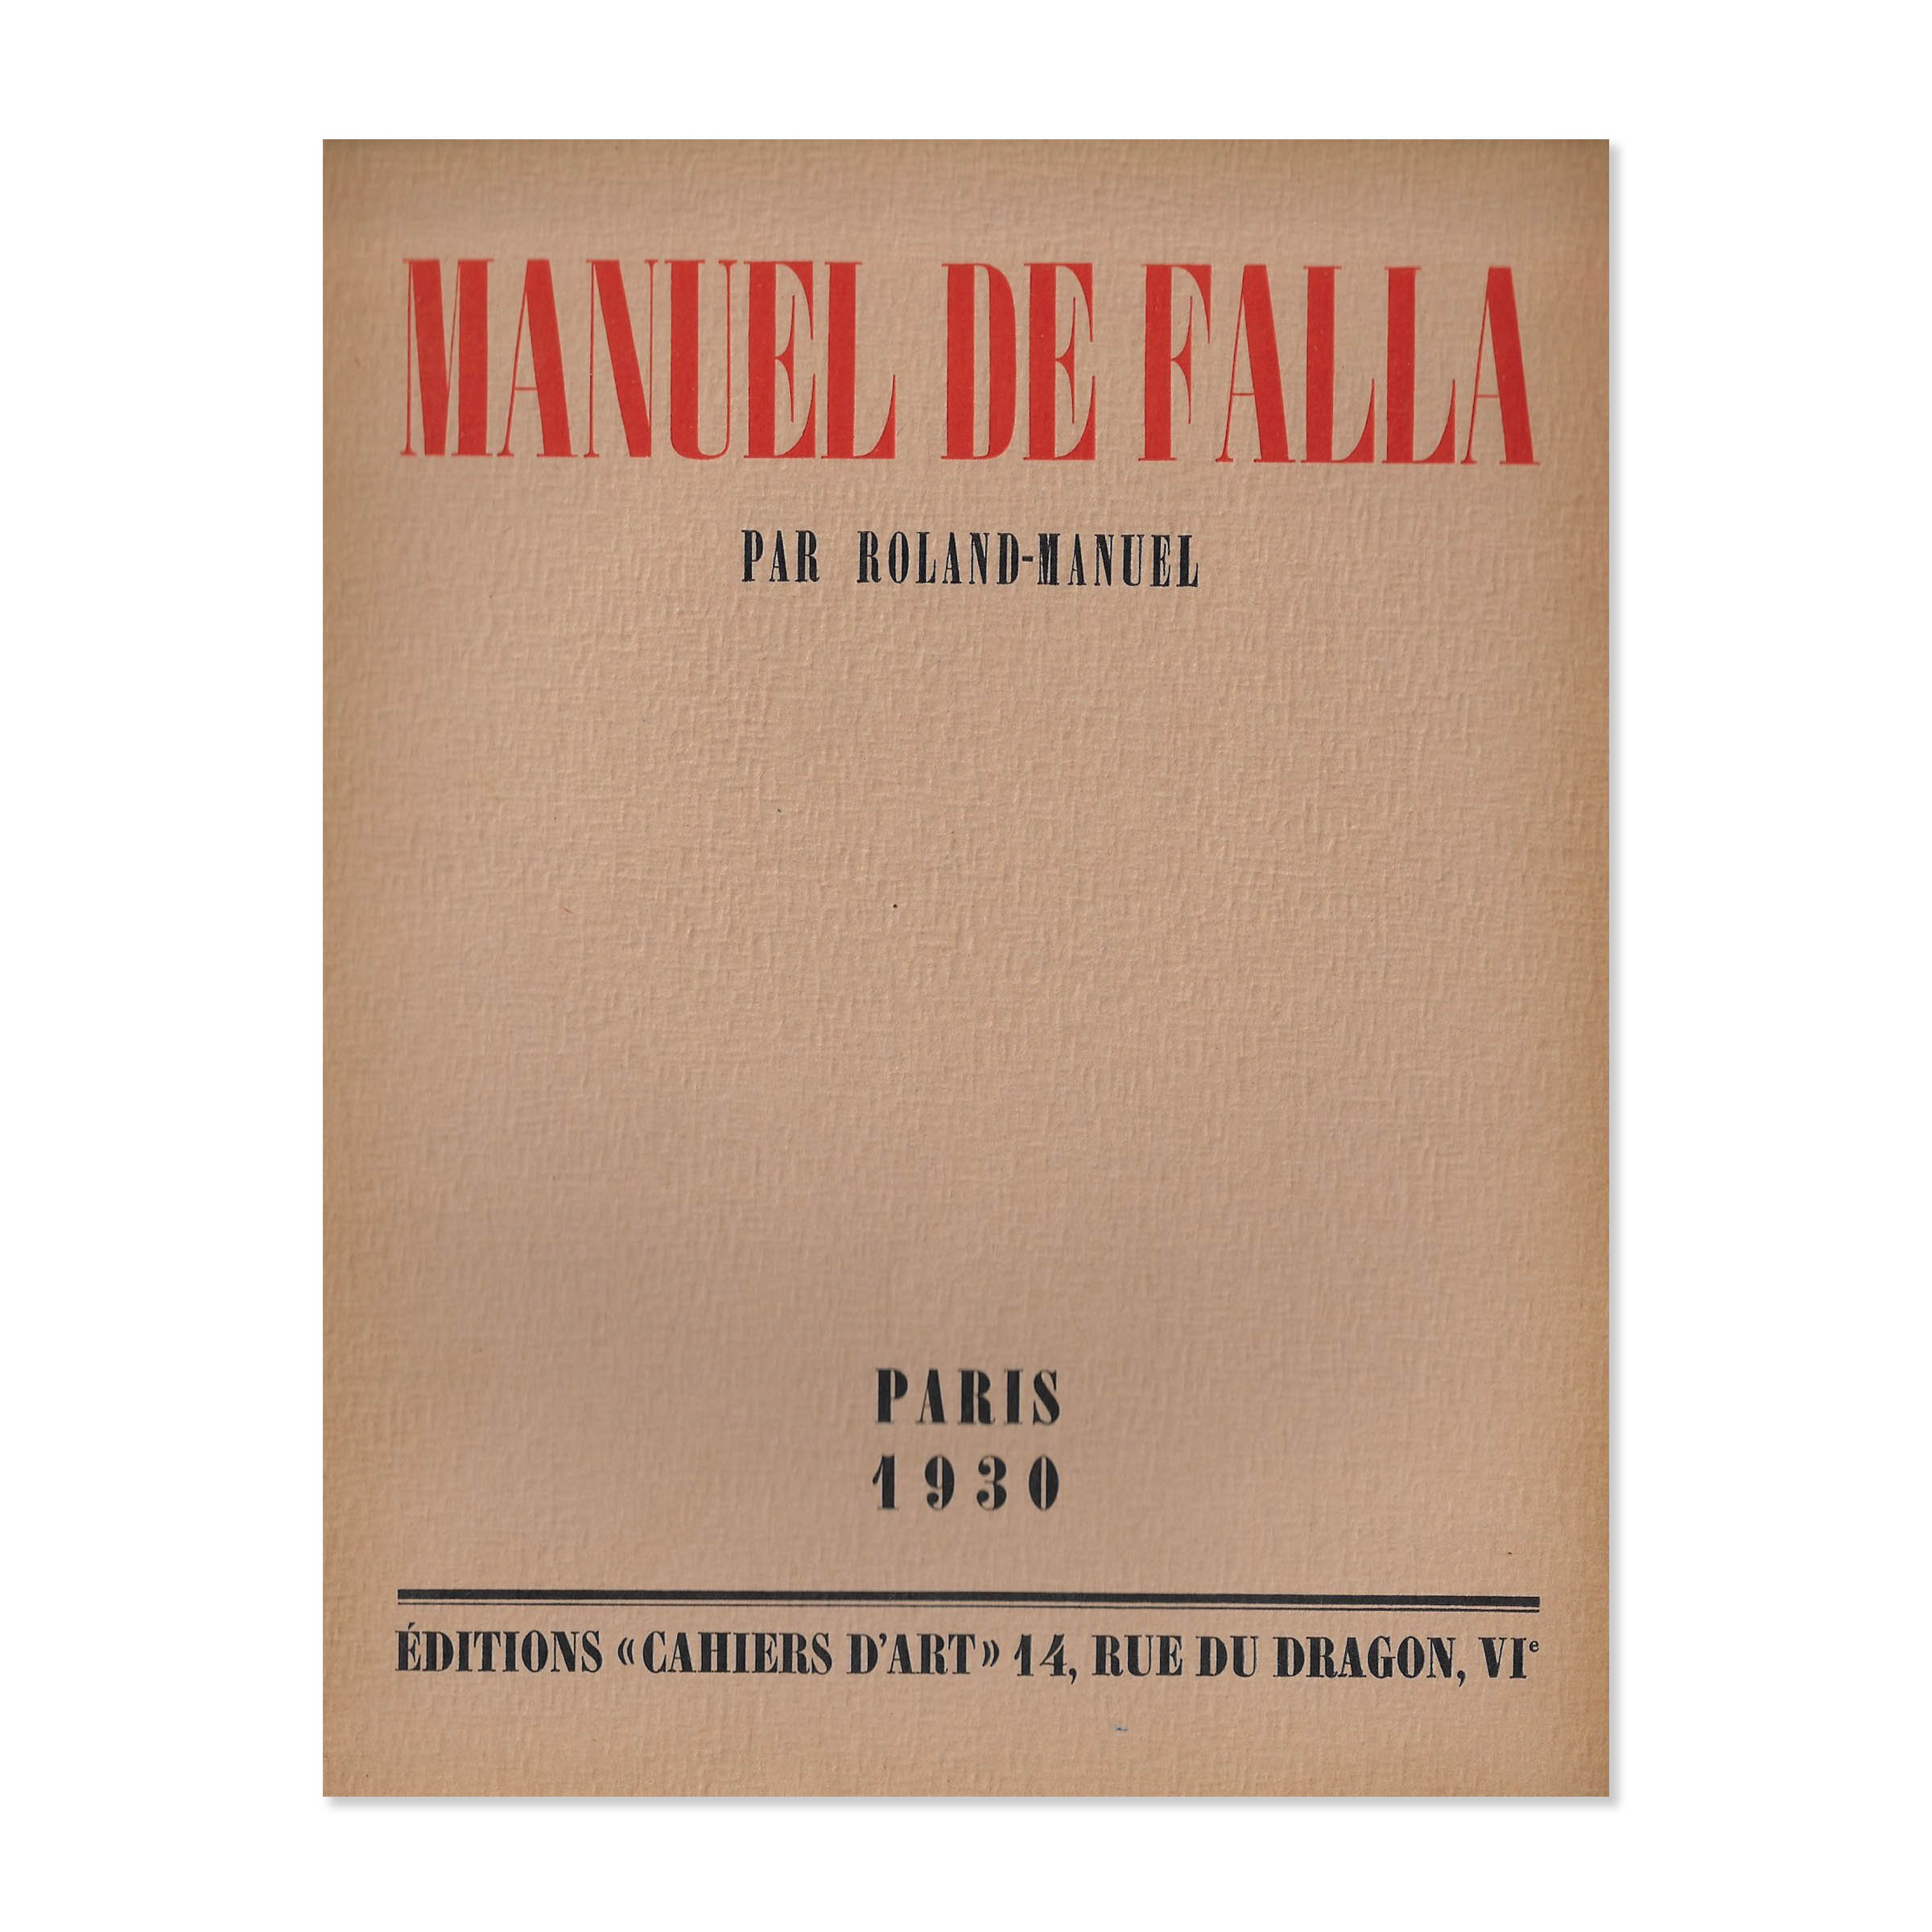 Manuel De Falla. Cover view